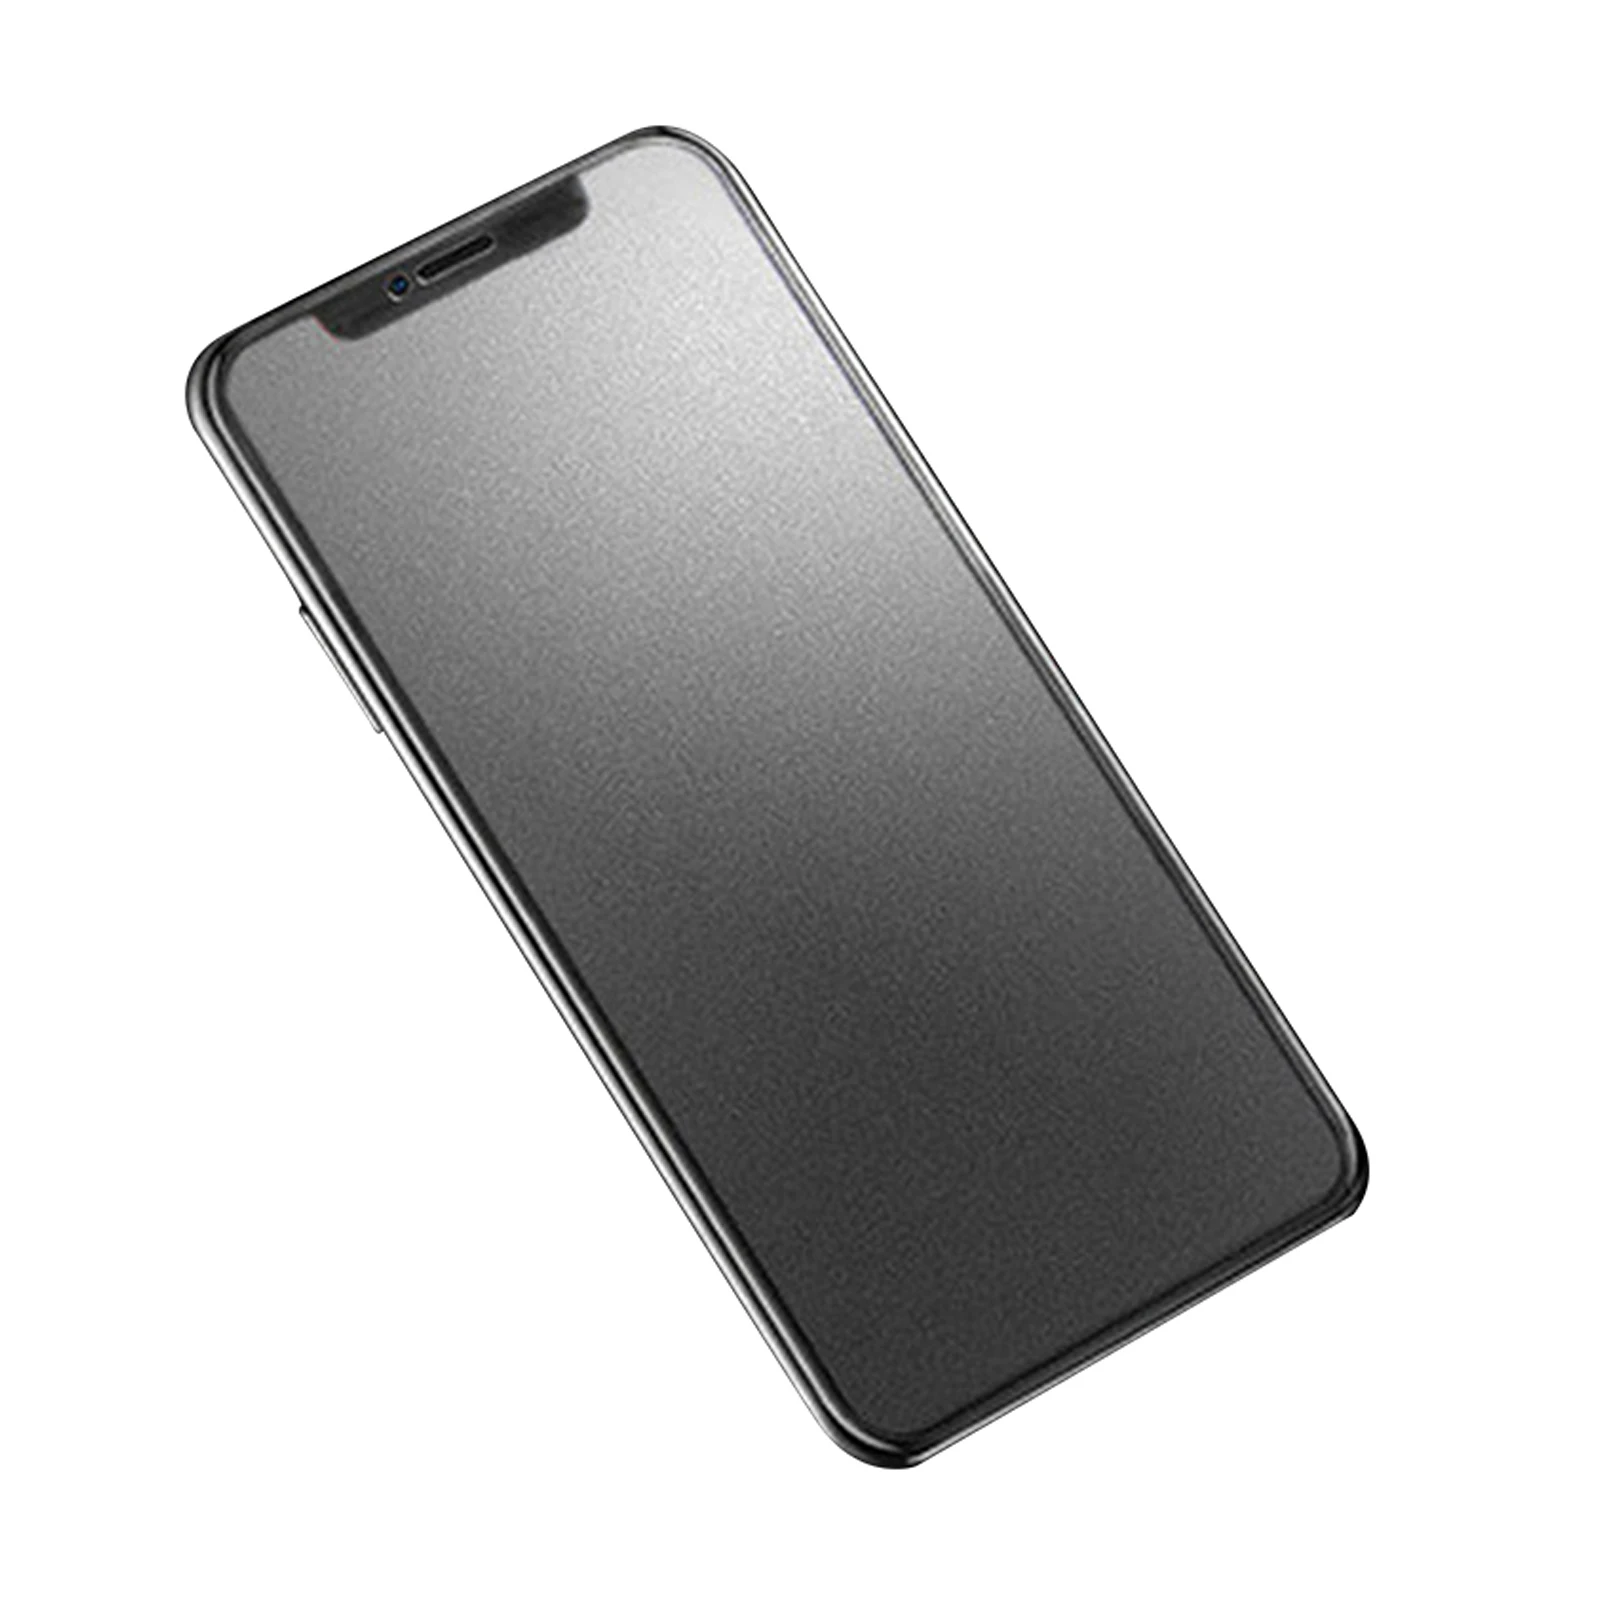 

Матовое закаленное стекло с защитой от отпечатков пальцев для IPhone11 XR, полное покрытие экрана, защита от царапин, матовая стеклянная пленка